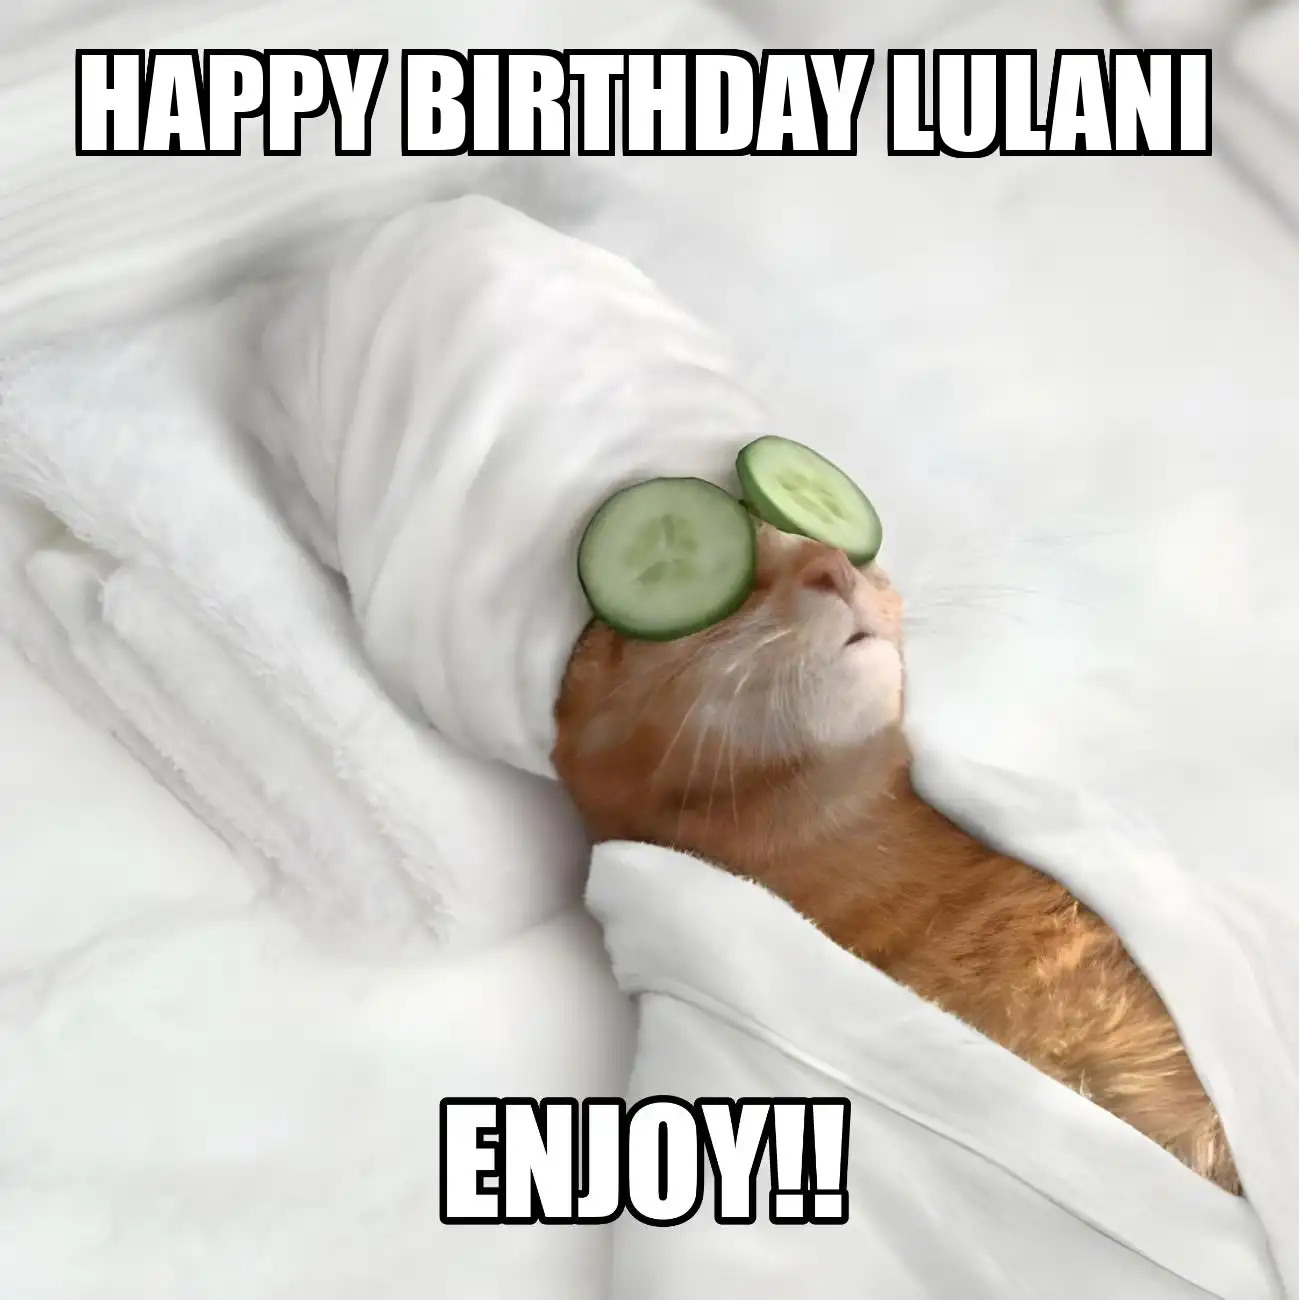 Happy Birthday Lulani Enjoy Cat Meme